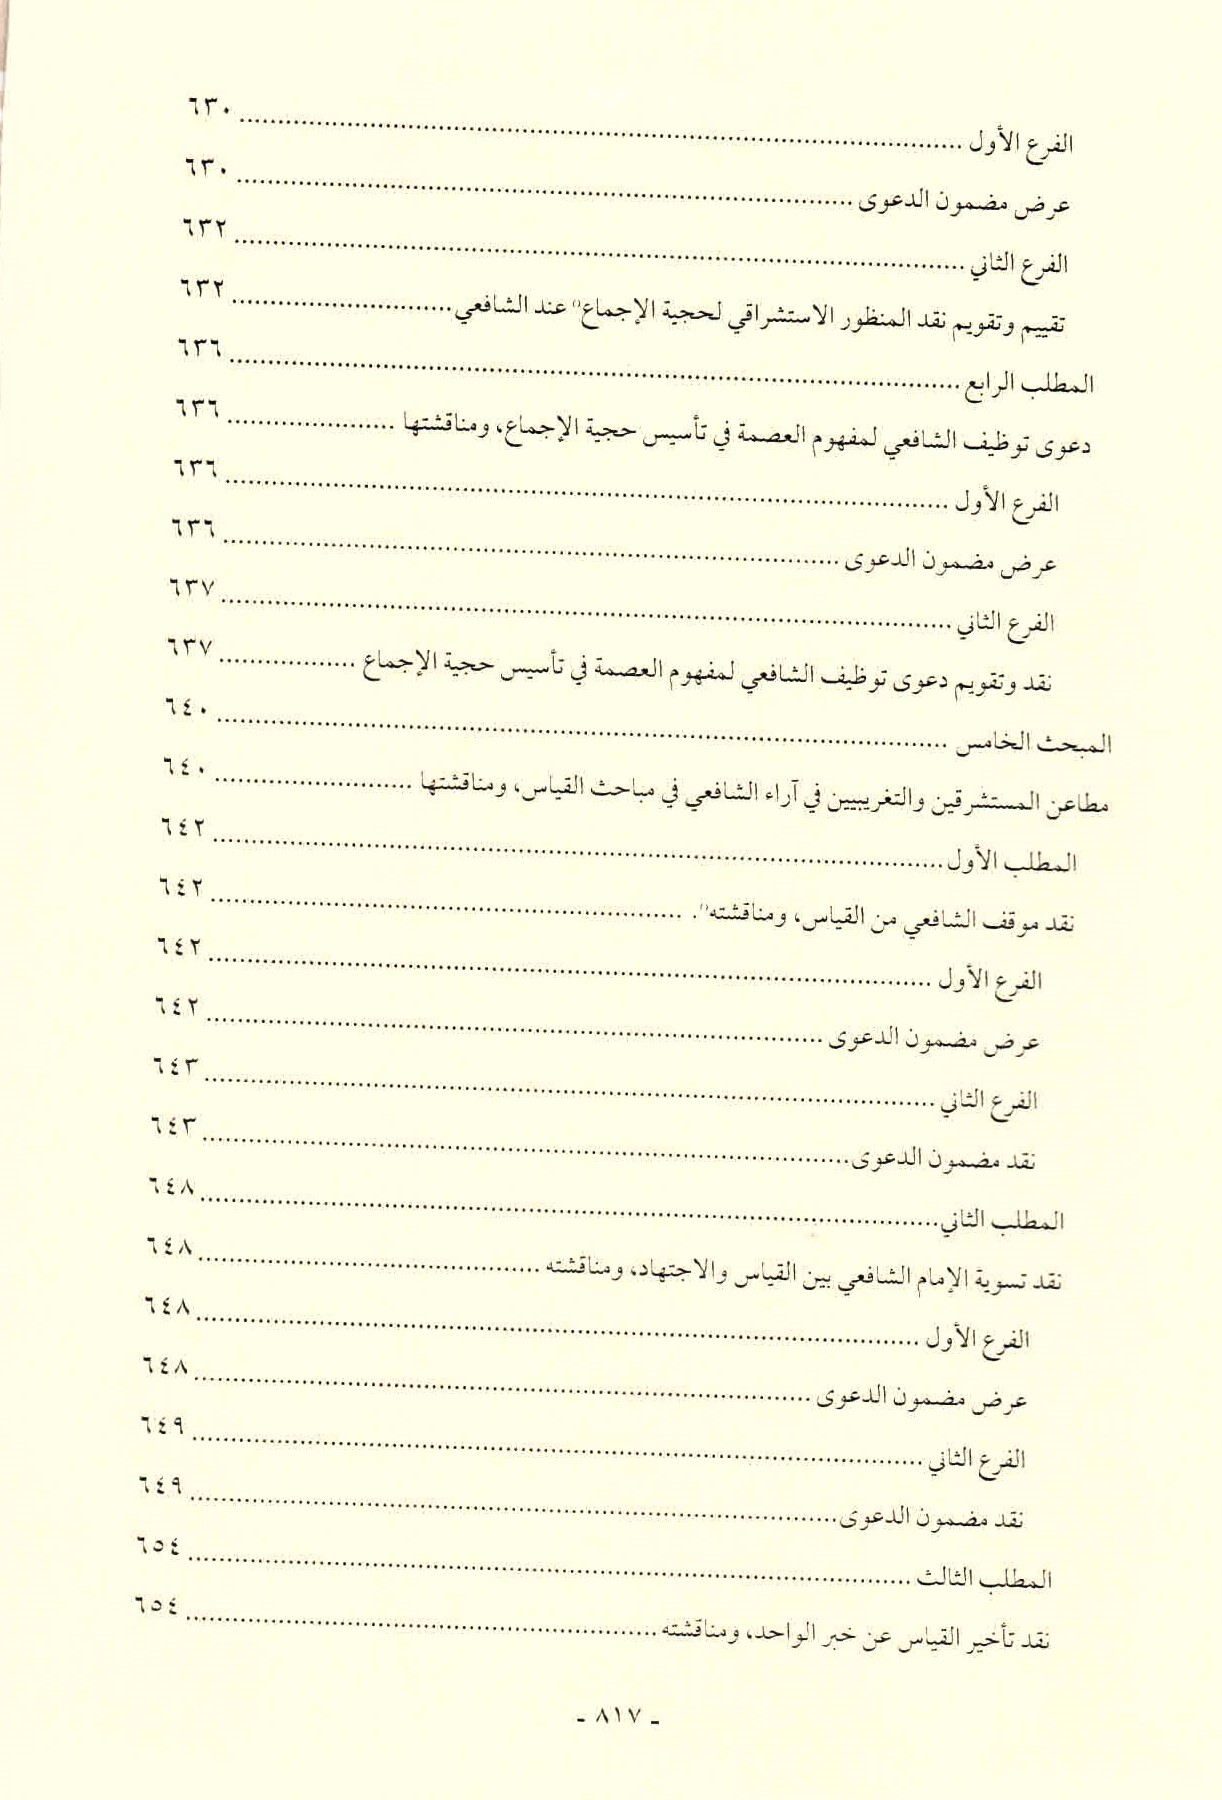 قائمة محتويات كتاب افتراءات المستشرقين والحداثيين على أصول الشريعة وأئمتها للدكتور هاني محمود ص. 817